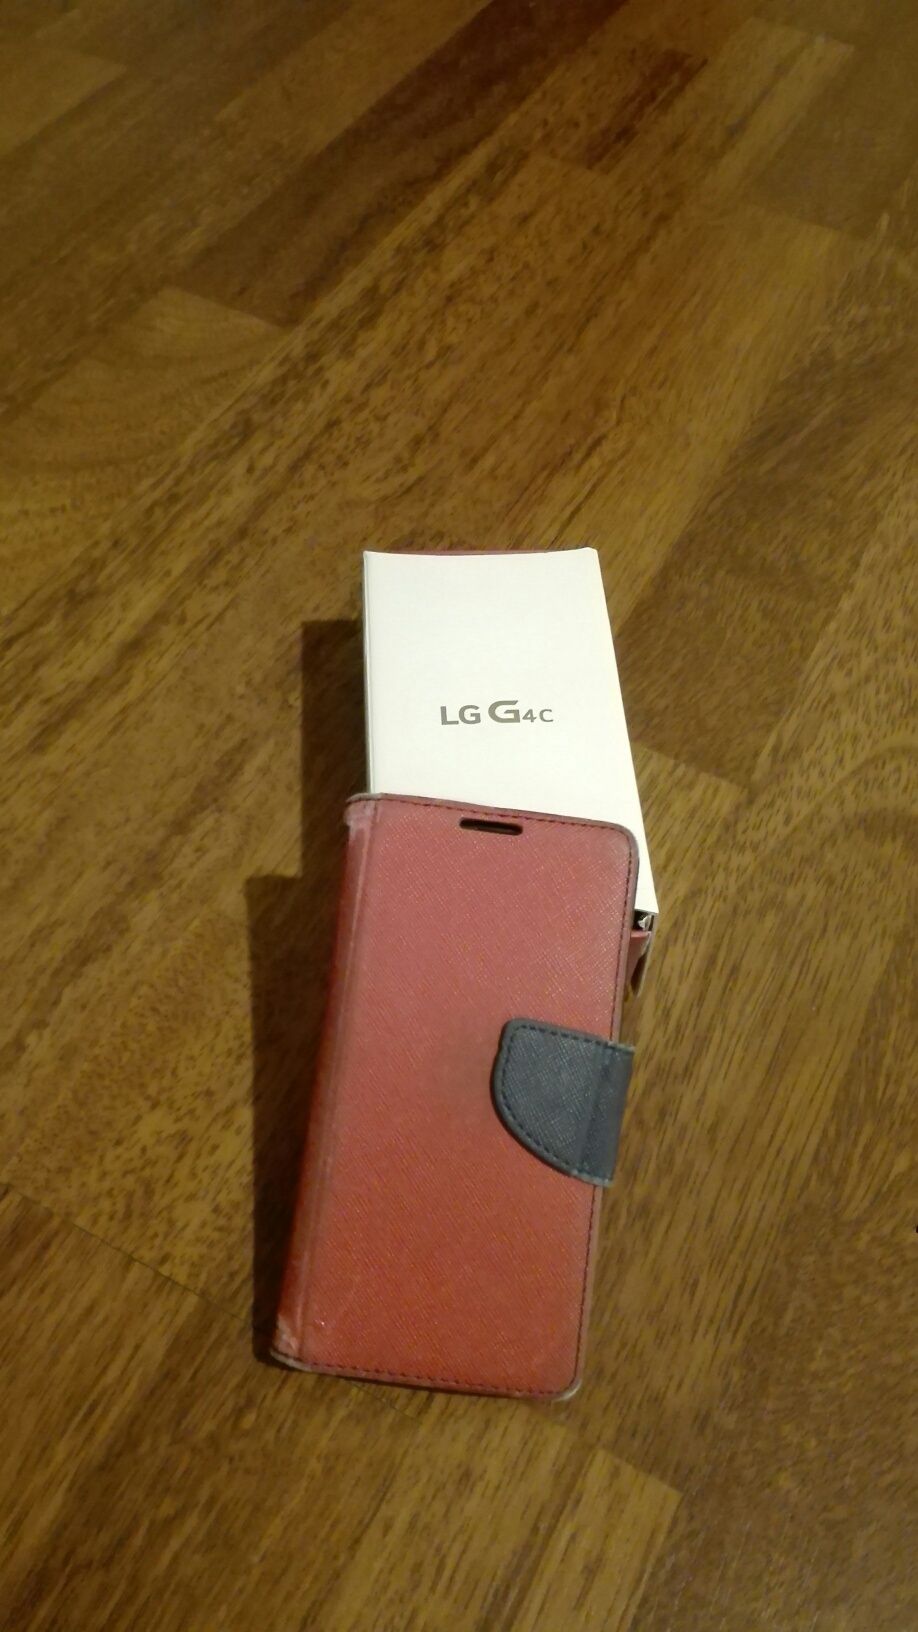 LG g4c